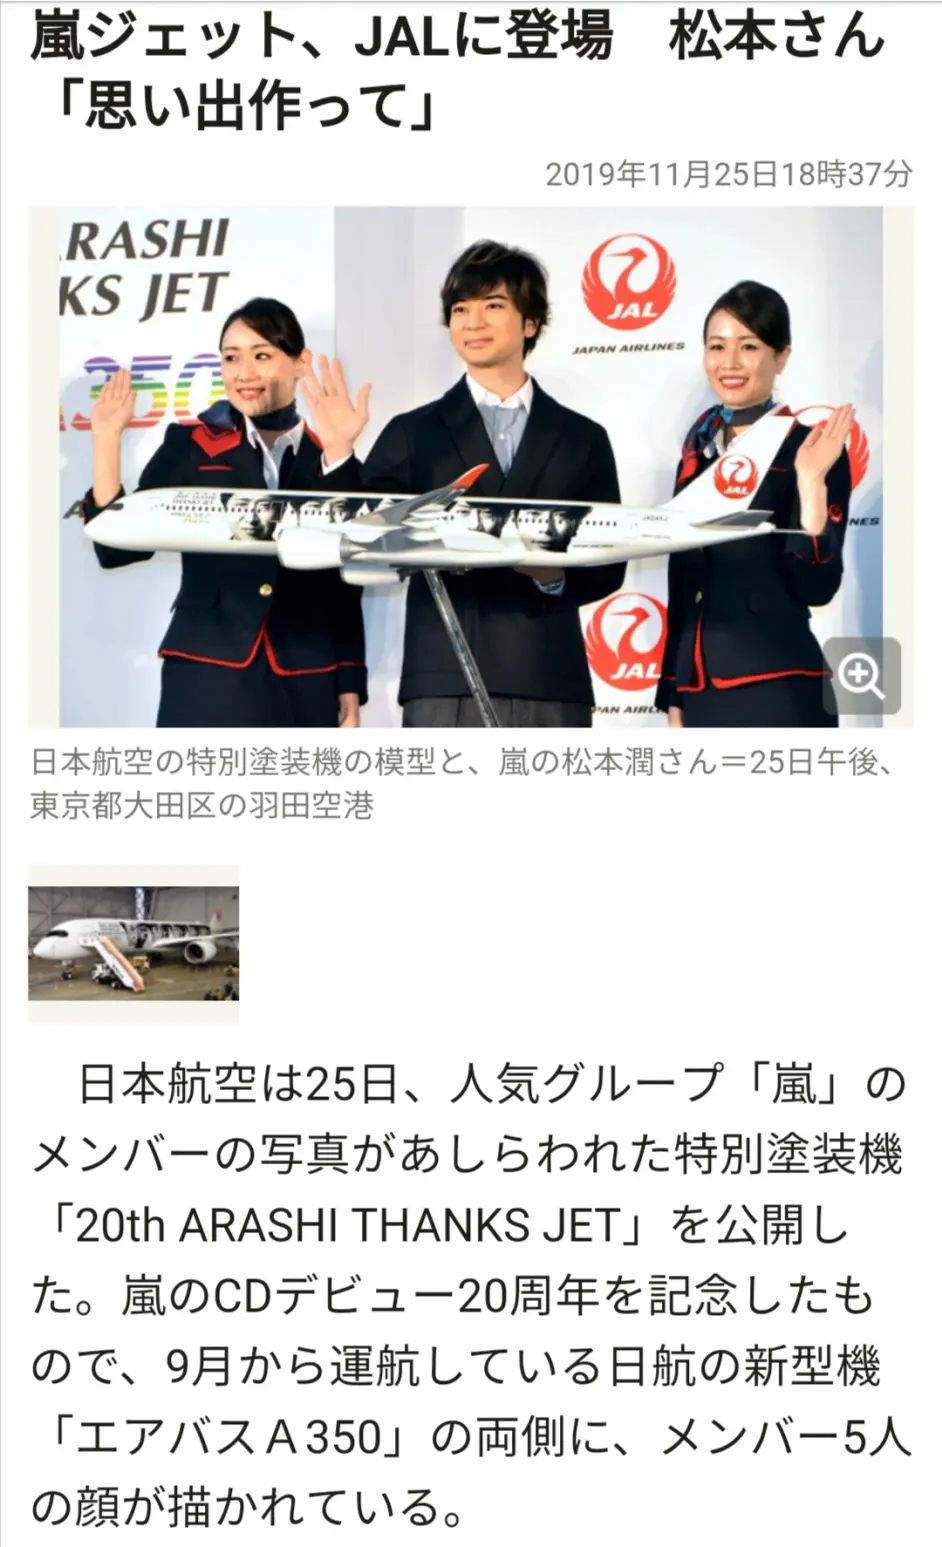 嵐 ARASHI 5×20 アルバム JALハワイ線限定盤 日本航空